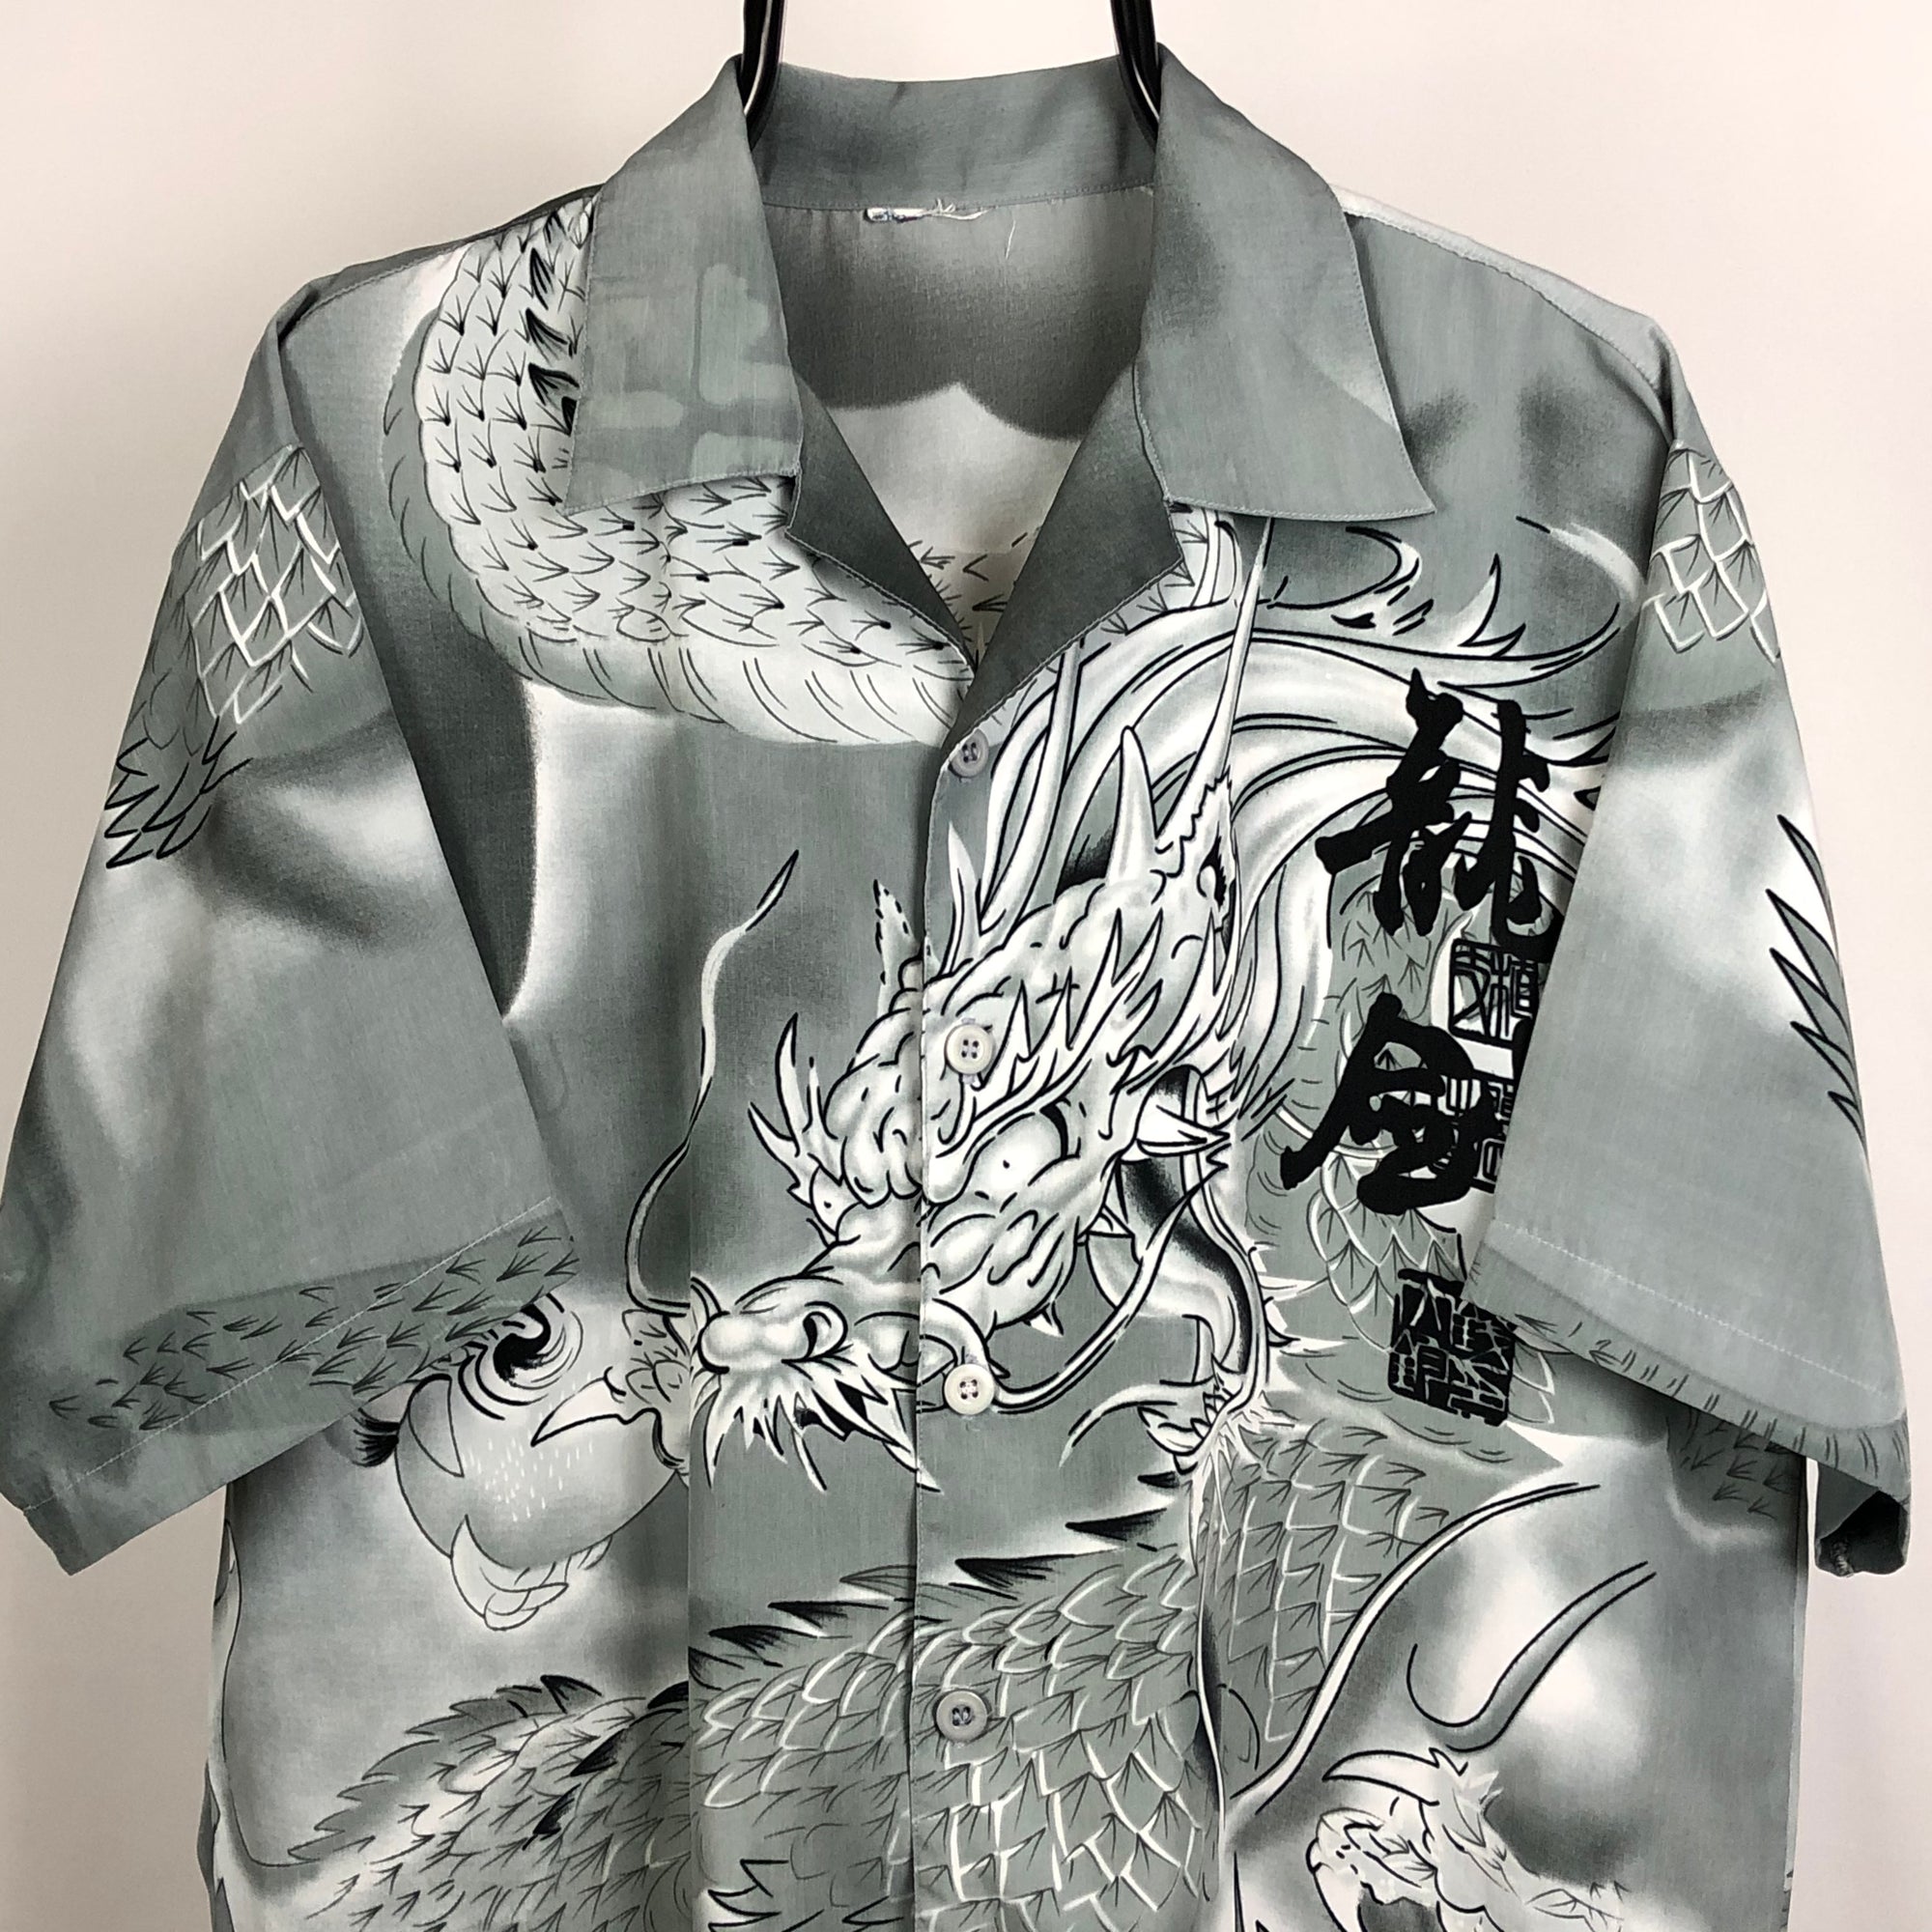 Dragon Print Shirt in Silver - Men's Large/Women's XL